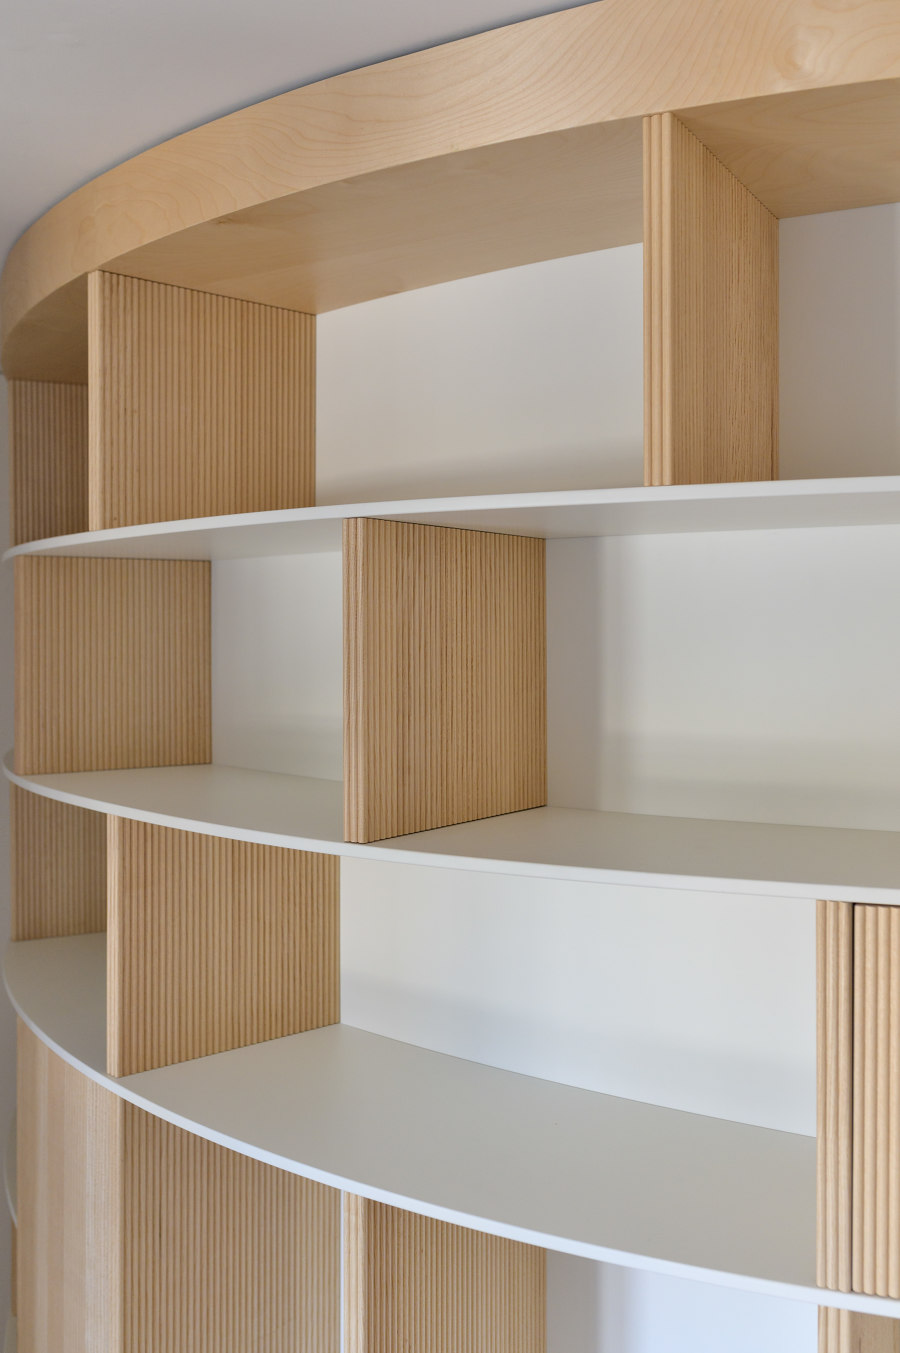 Apartment with a Library di Olbos Studio | Locali abitativi